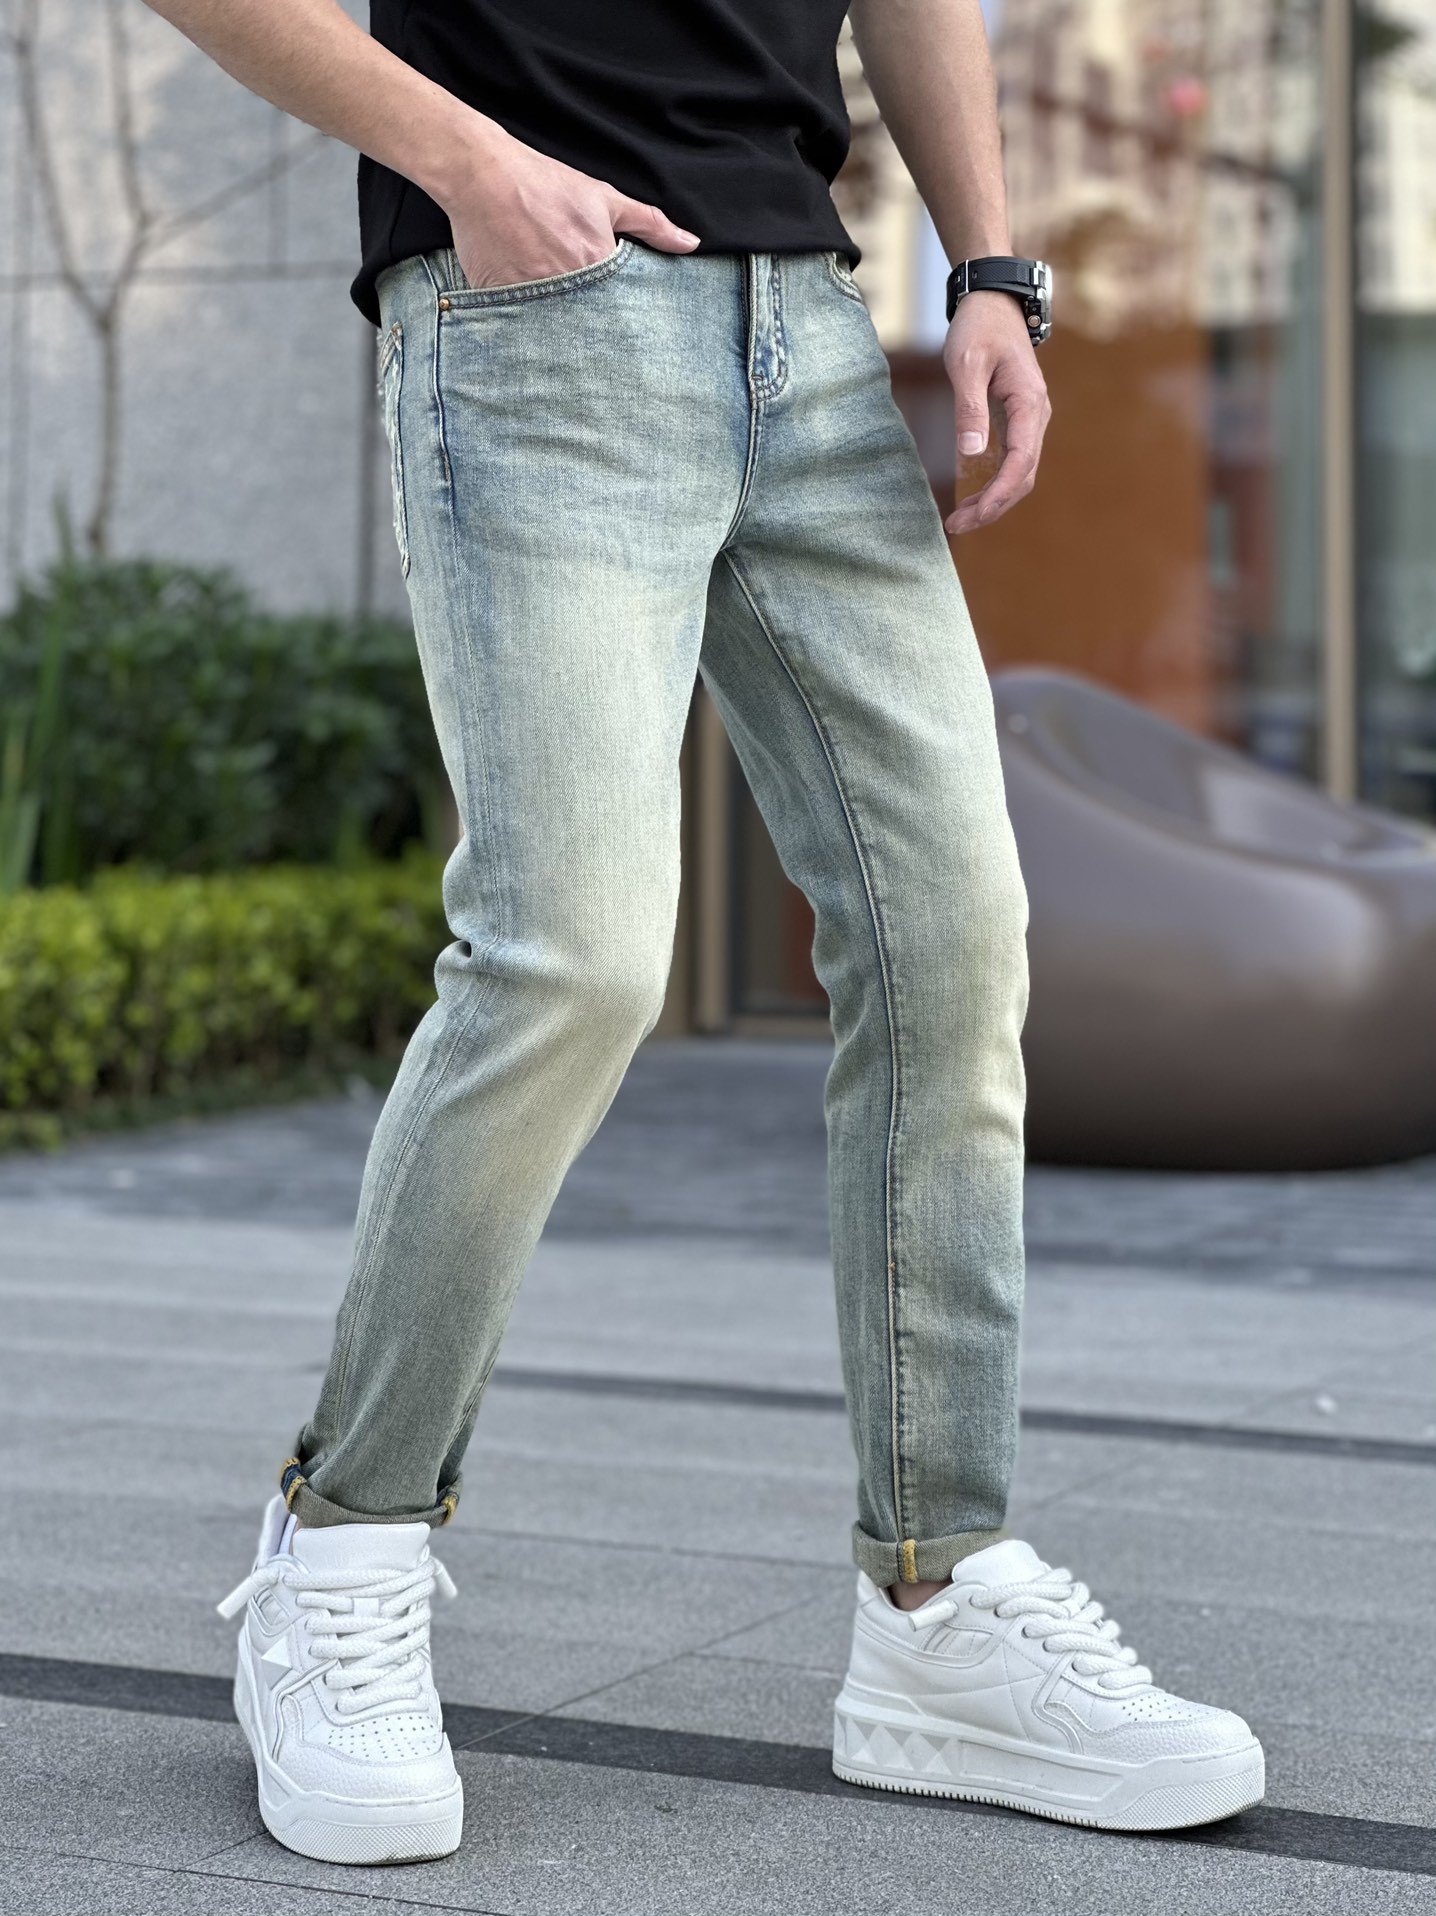 最新的新款现货上市原单爆款牛仔裤超级定制款原版五金超级重工工艺版型超赞细节做工无可挑剔！款式不挑人特别高